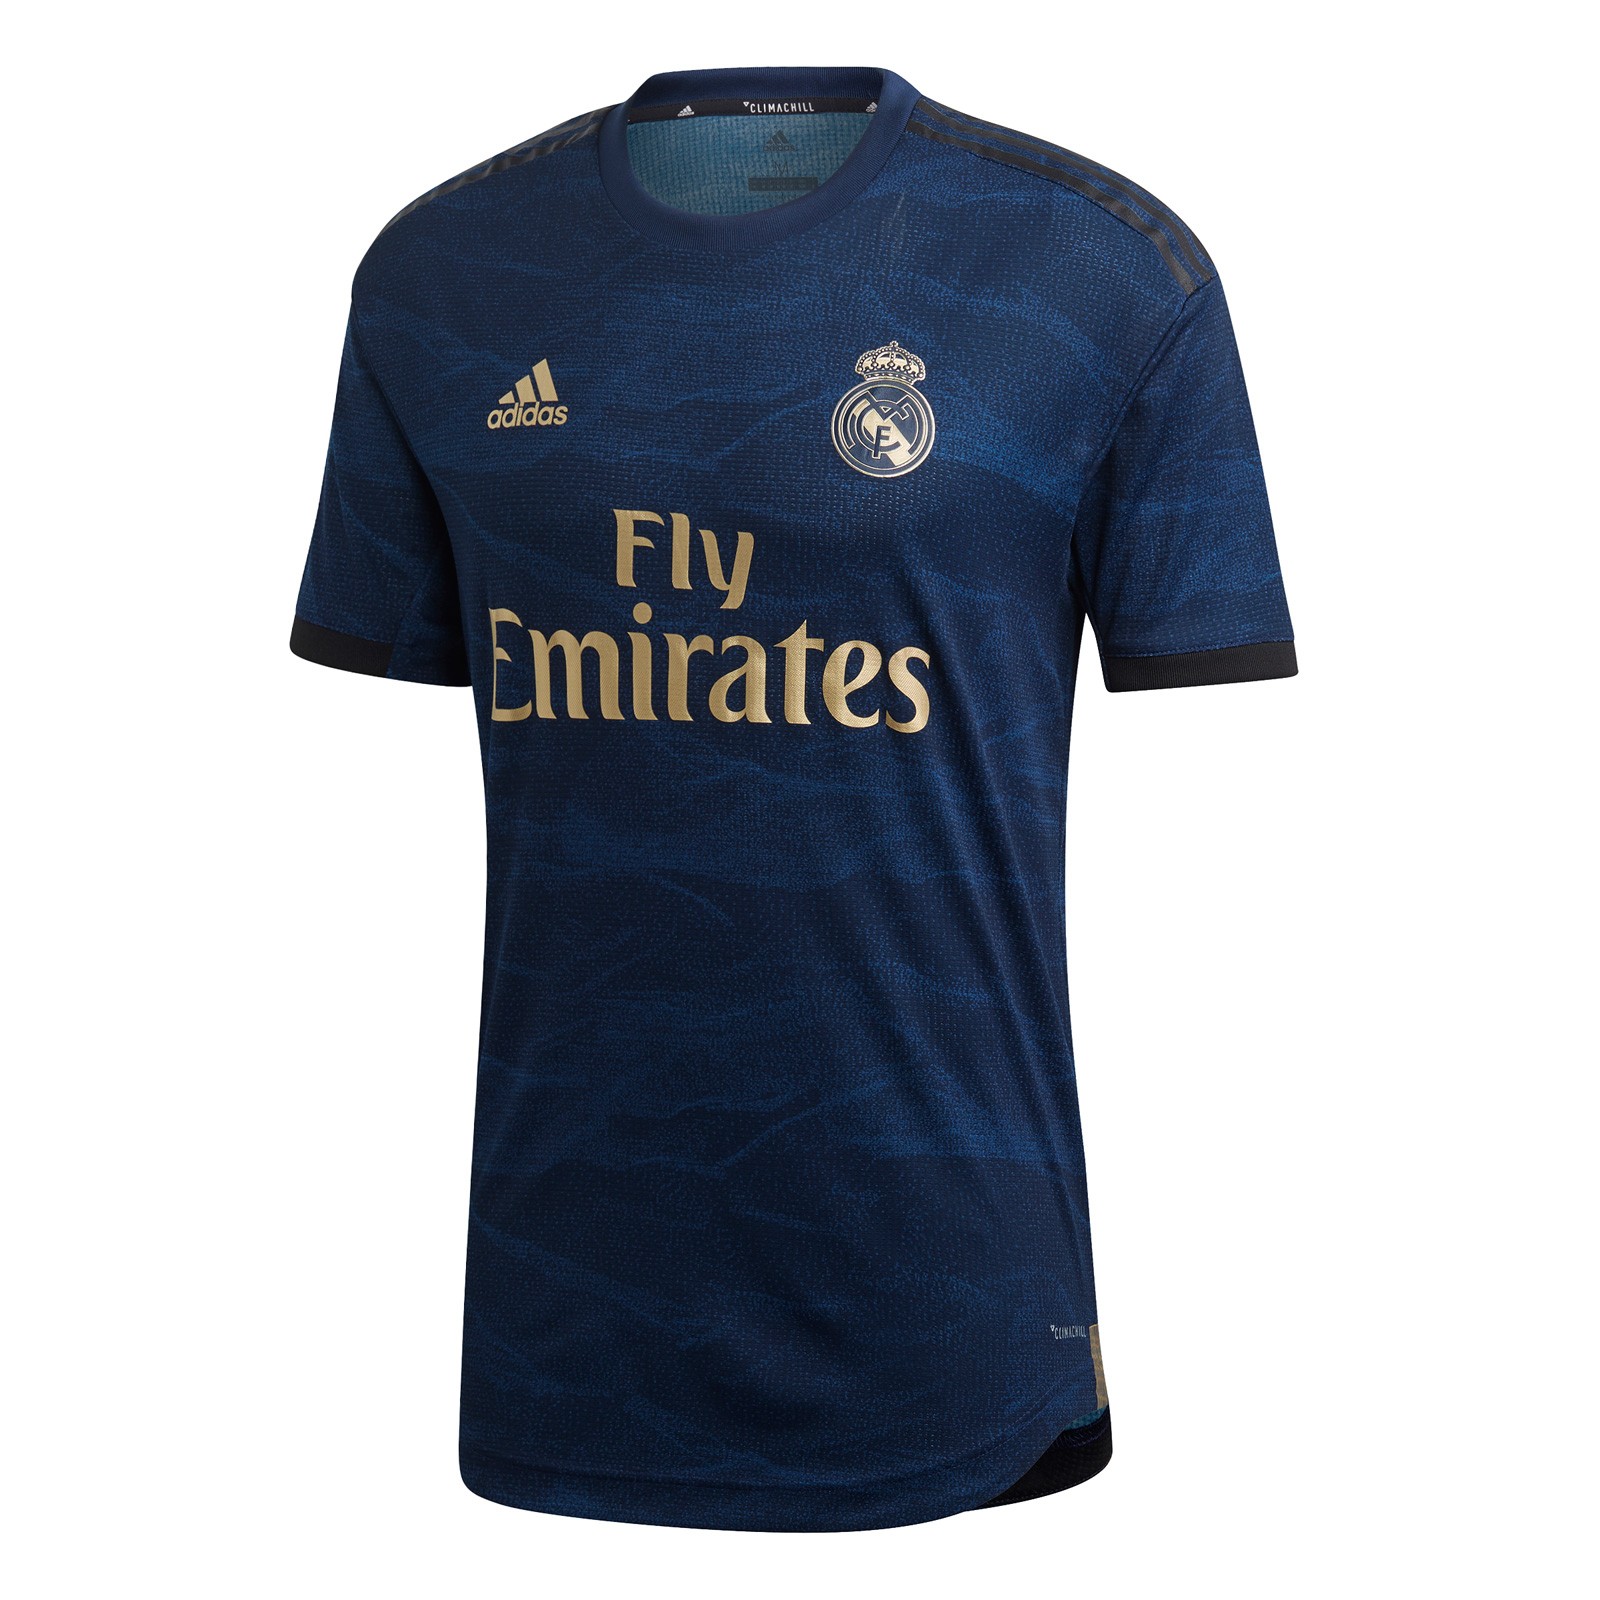 皇家马德里2019-20赛季球员版客场球衣